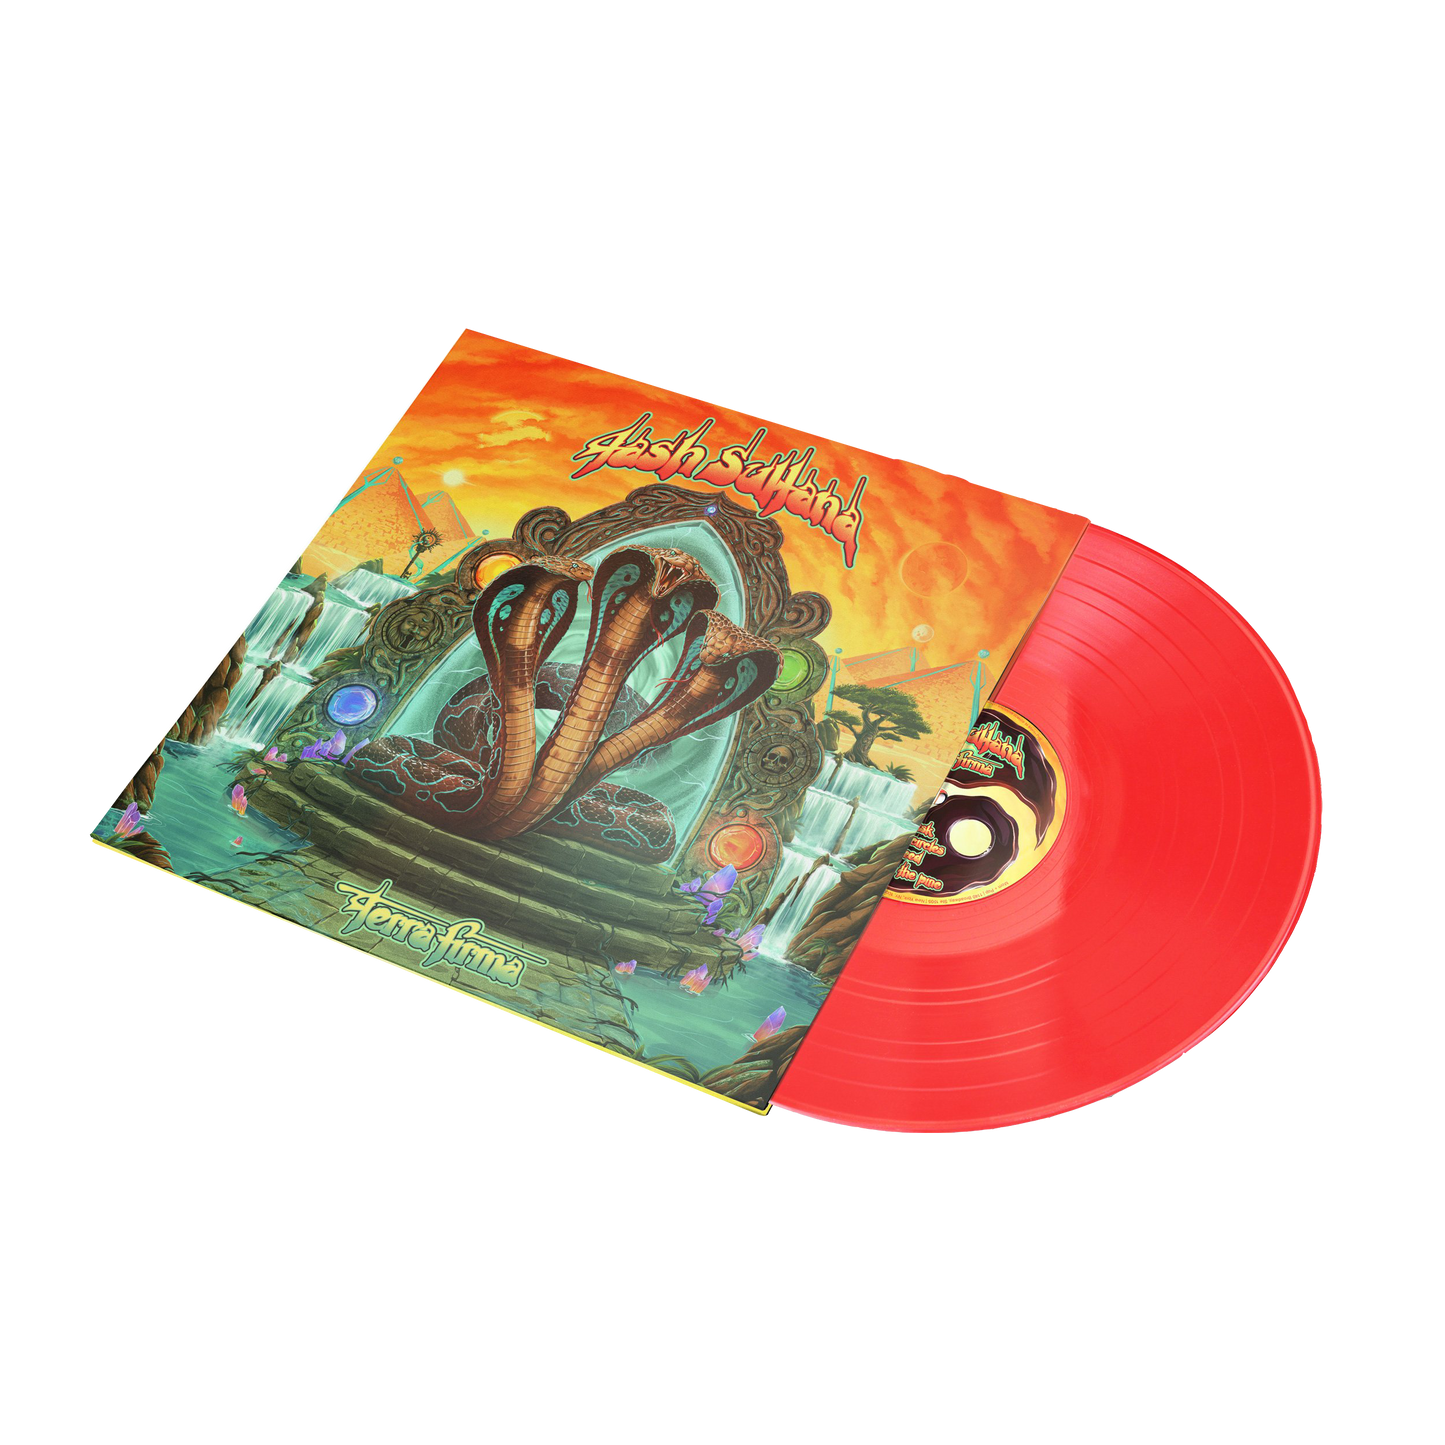 Terra Firma Deluxe [RED] Vinyl LP